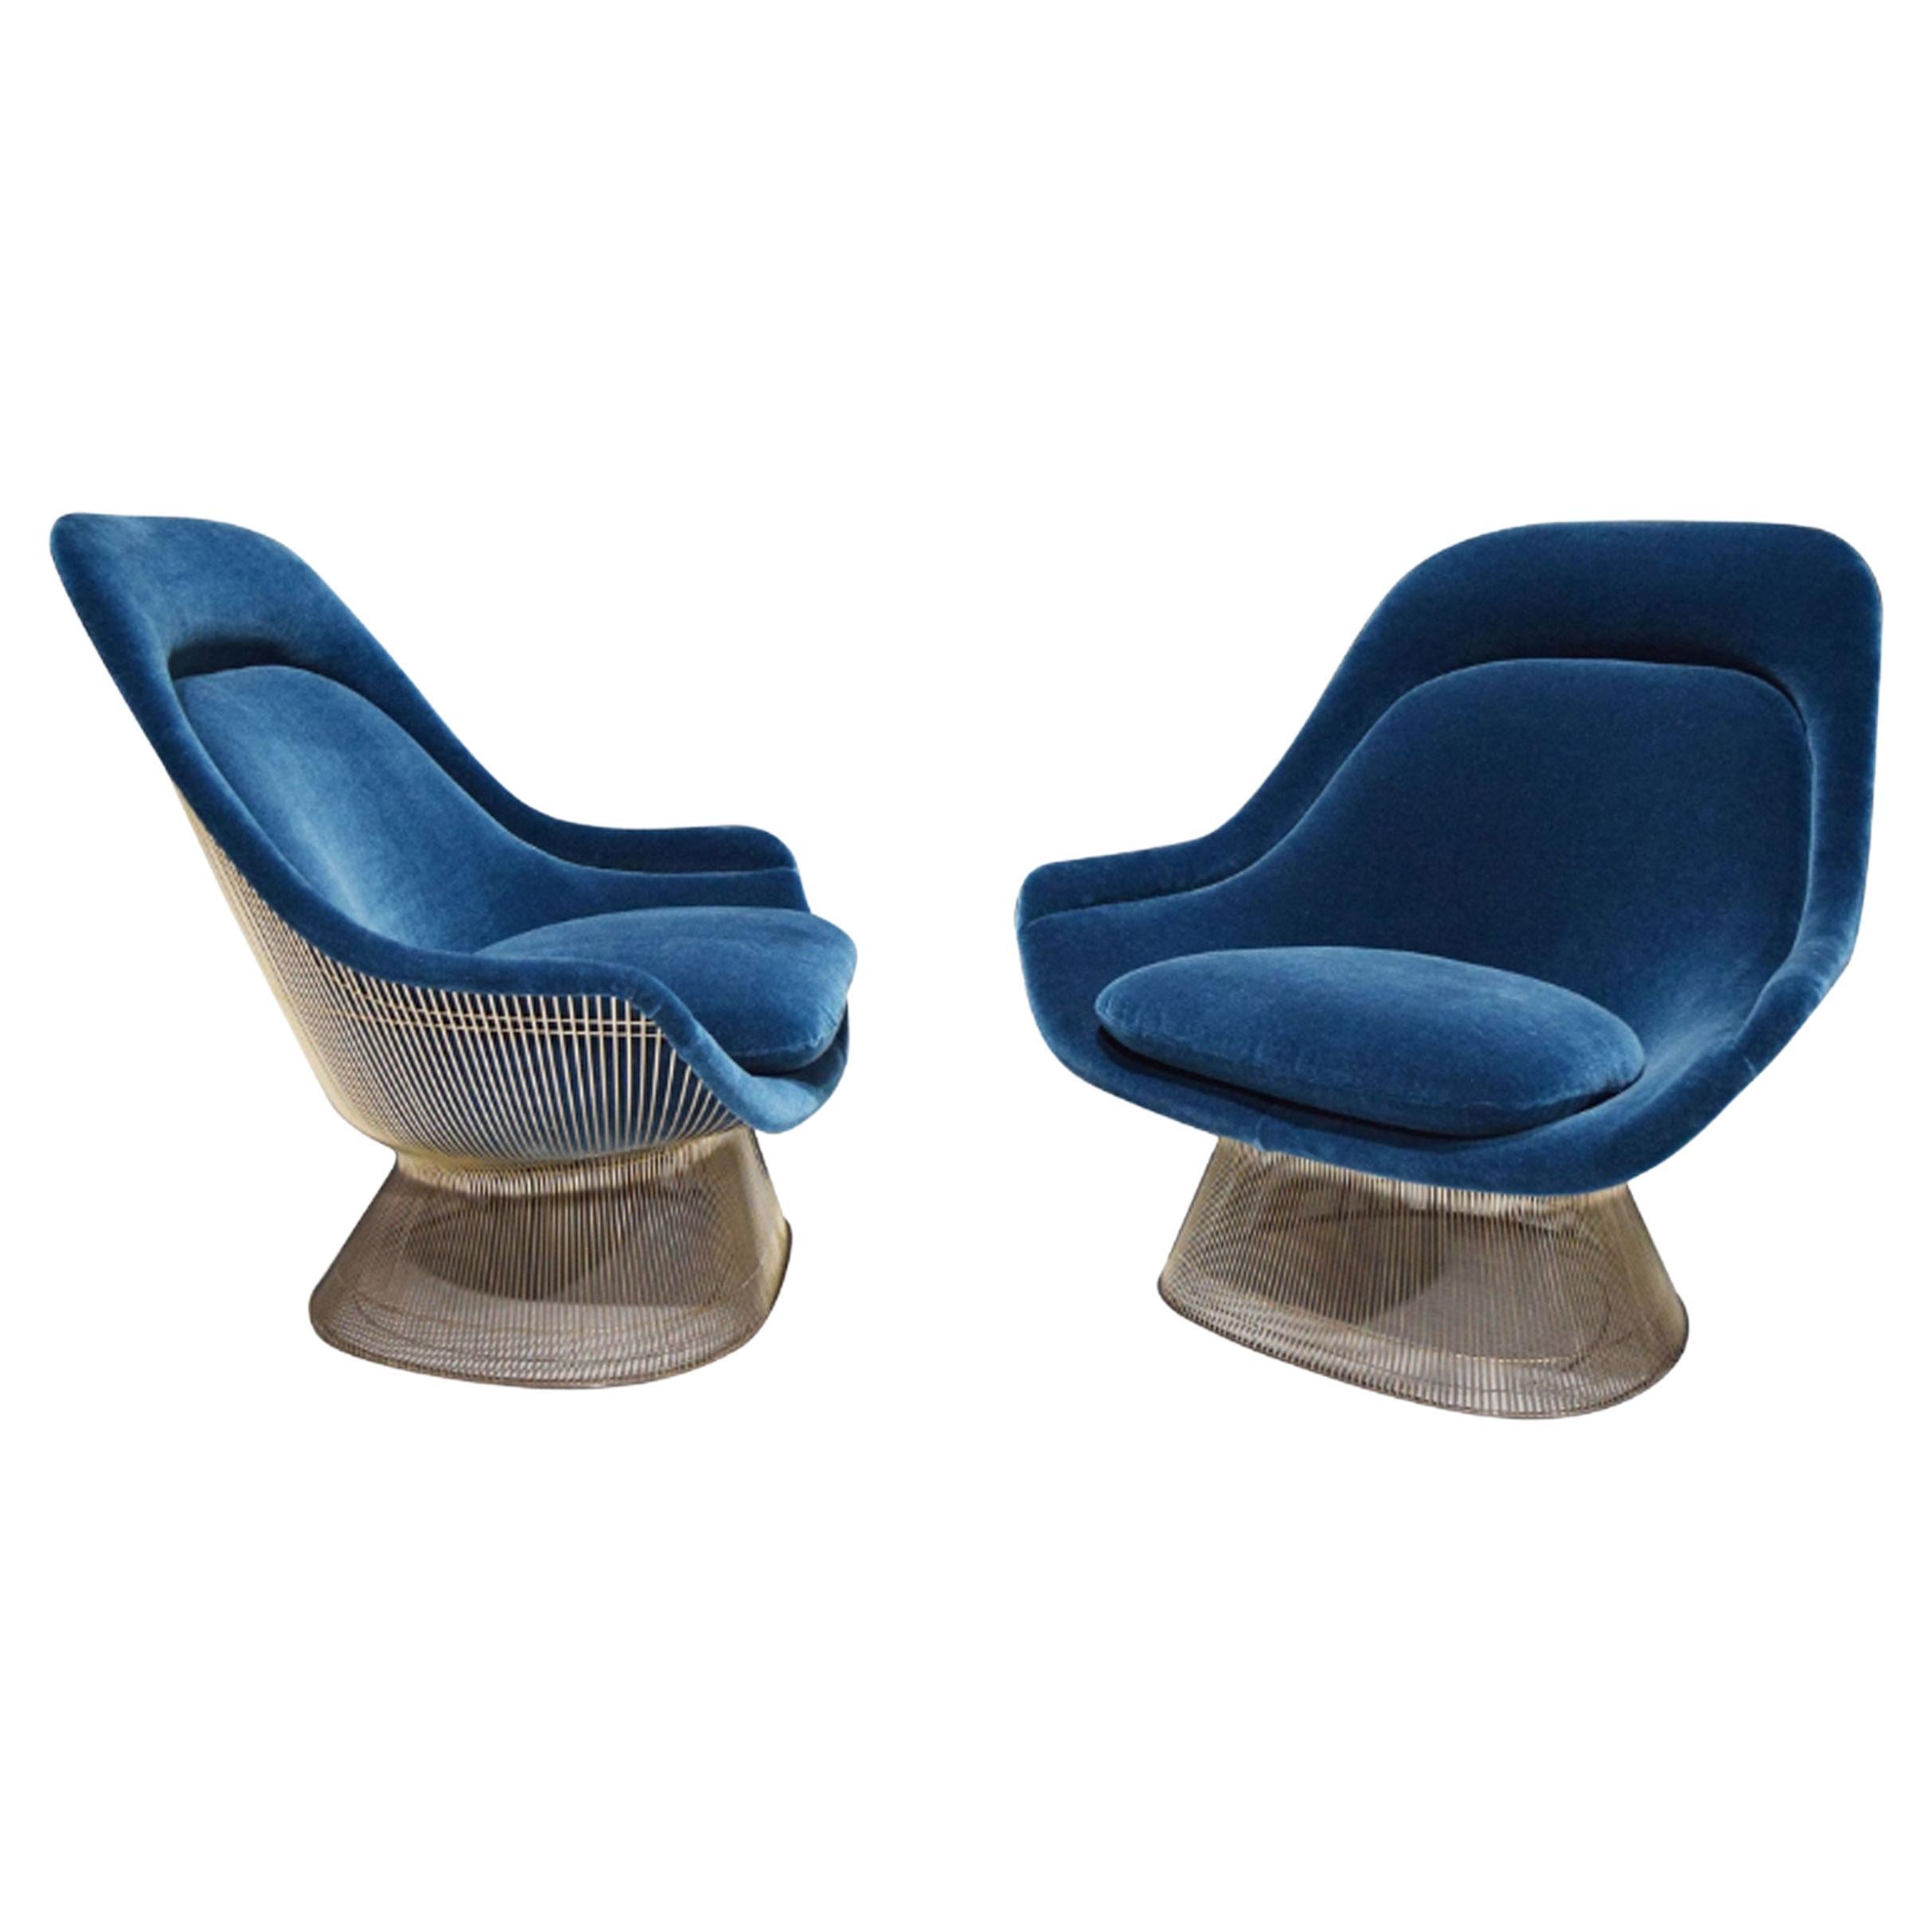 Paire de fauteuils Warren Platner pour Knoll en mohair bleu